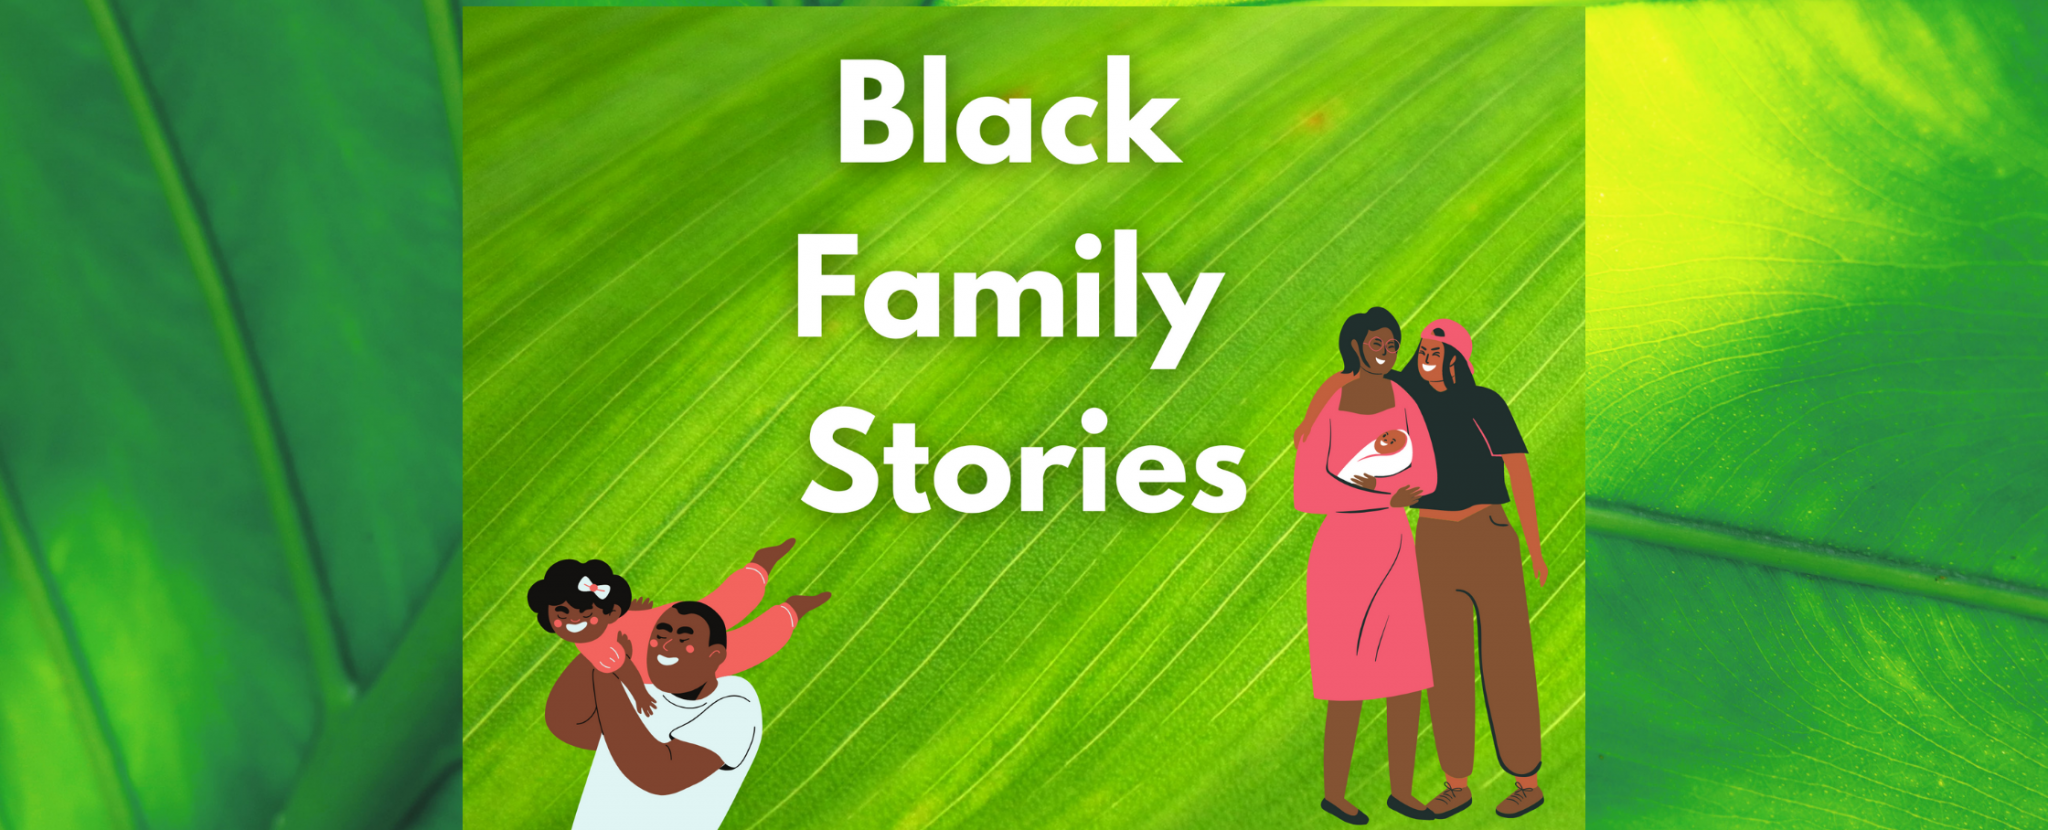 Black Family Stories 